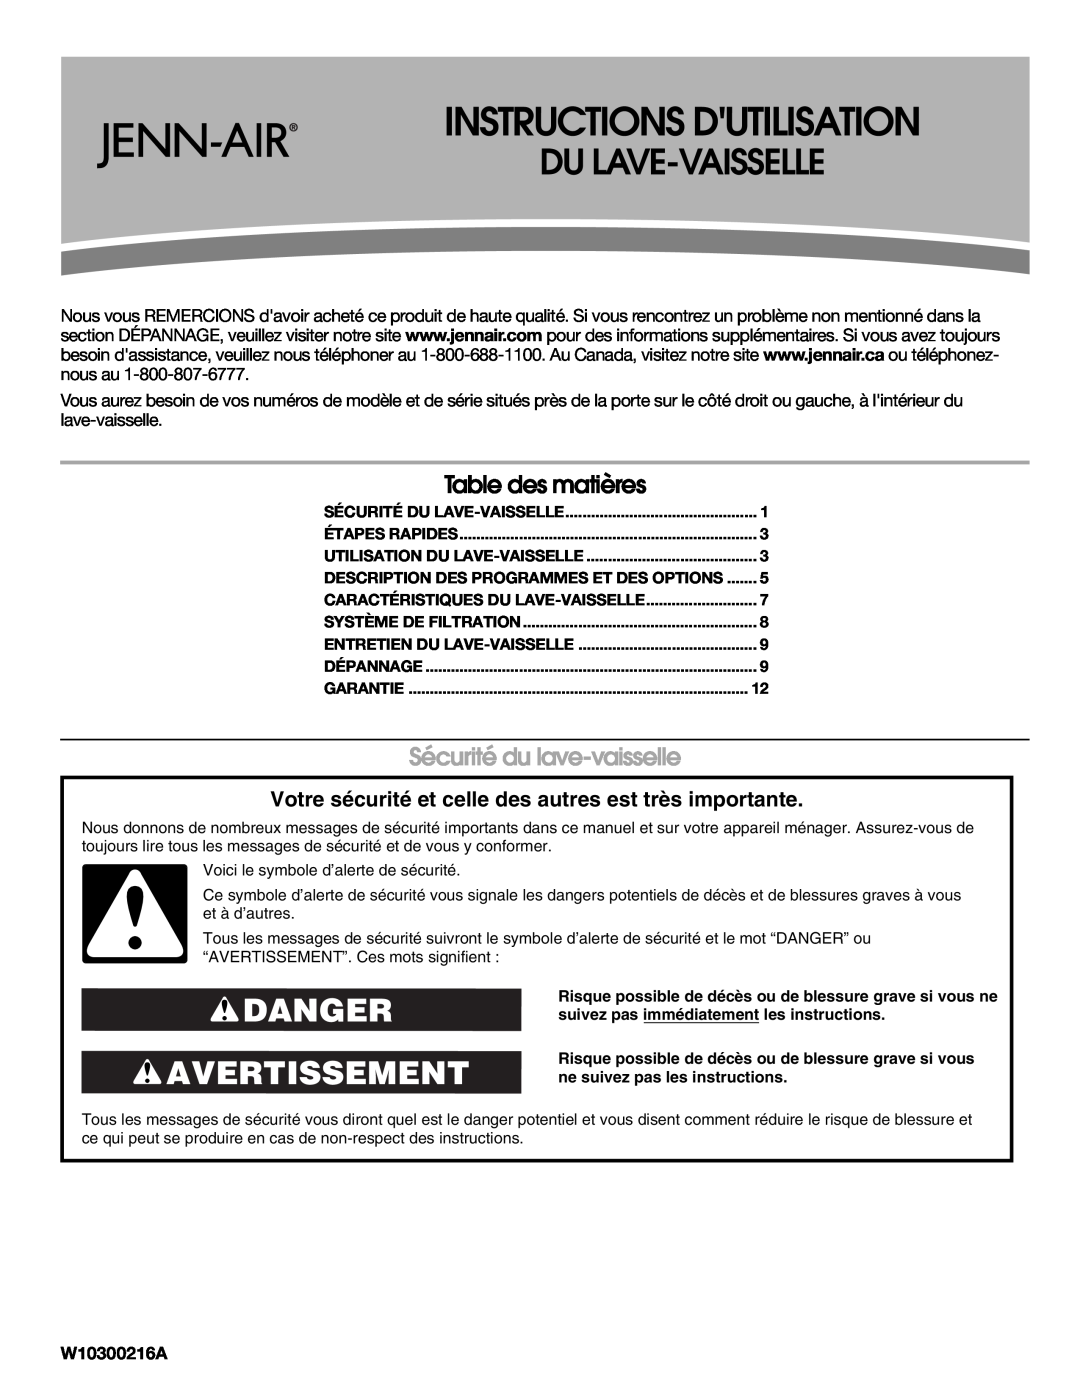 Jenn-Air W10300216A Instructions Dutilisation, Danger Avertissement, Table des matières, Sécurité du lave-vaisselle 